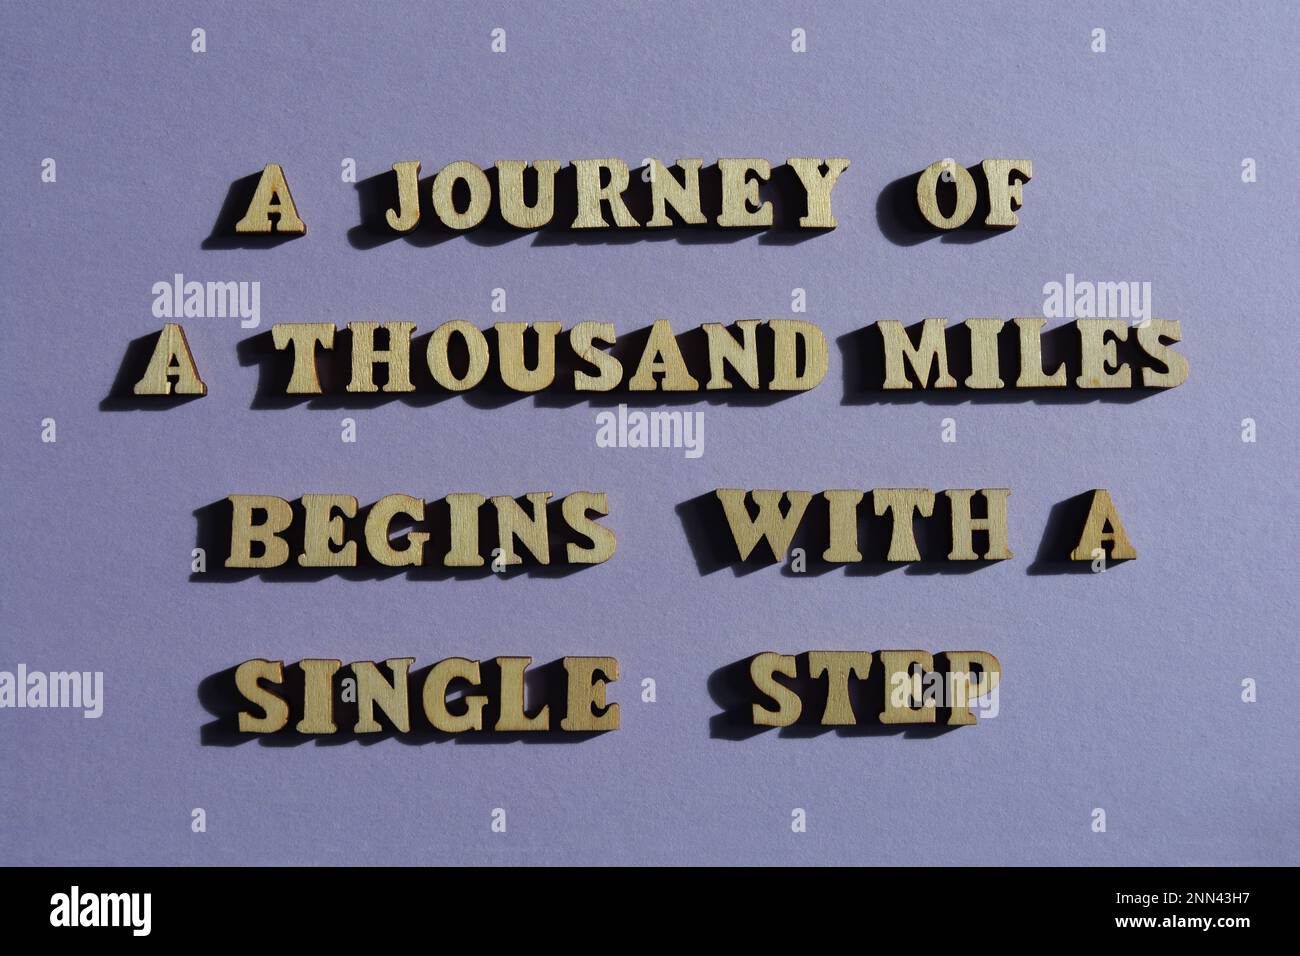 Eine Reise von tausend Meilen beginnt mit einem einzelnen Schritt, motivierenden Wörtern in hölzernen Buchstaben isoliert auf dem Hintergrund Stockfoto